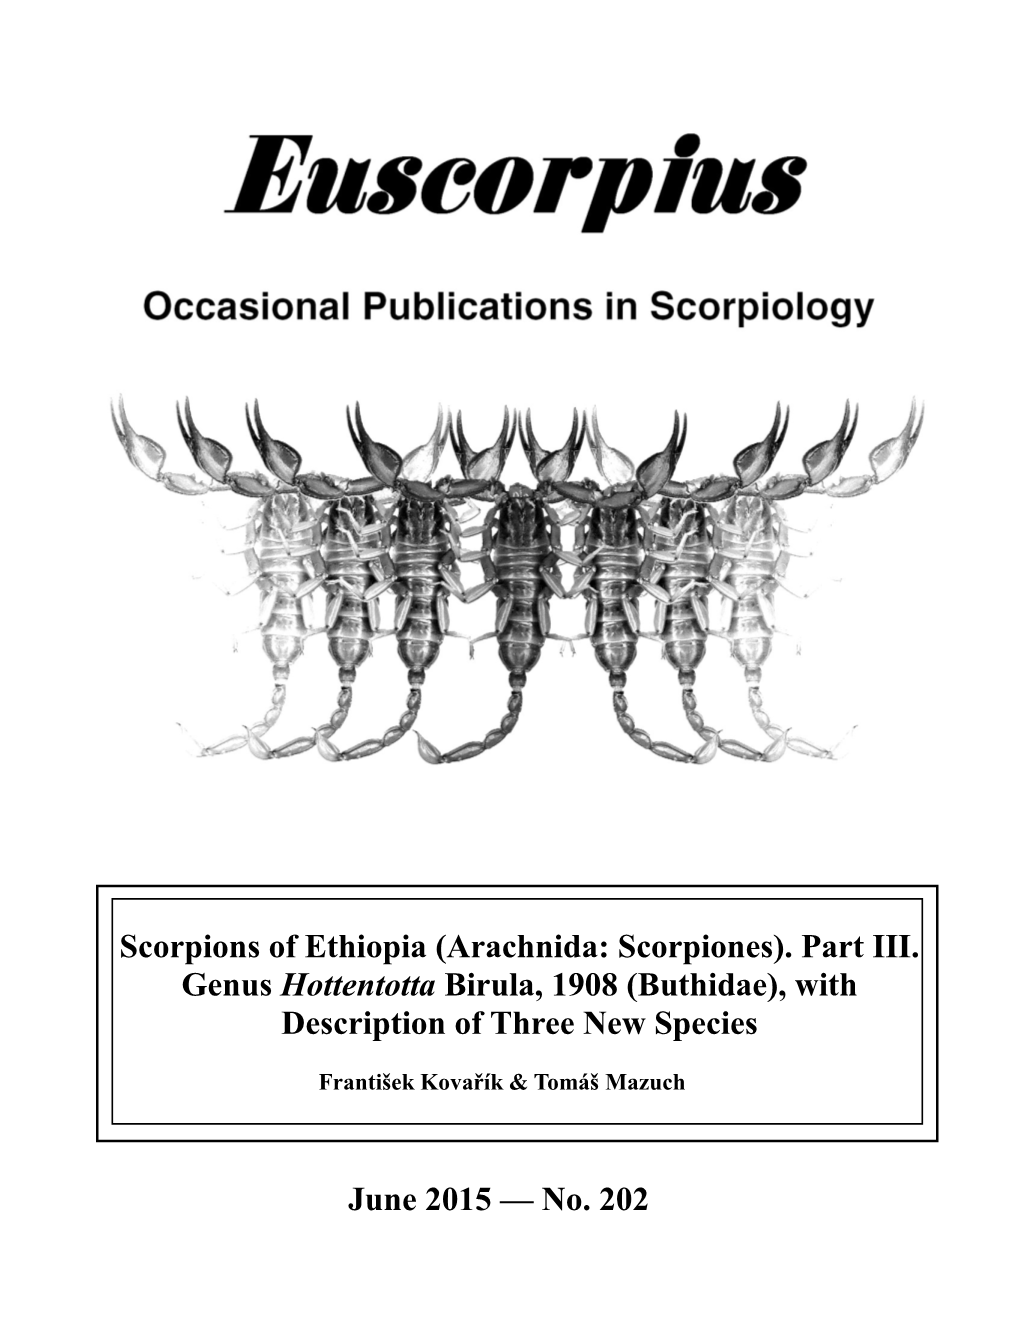 Scorpions of Ethiopia (Arachnida: Scorpiones)